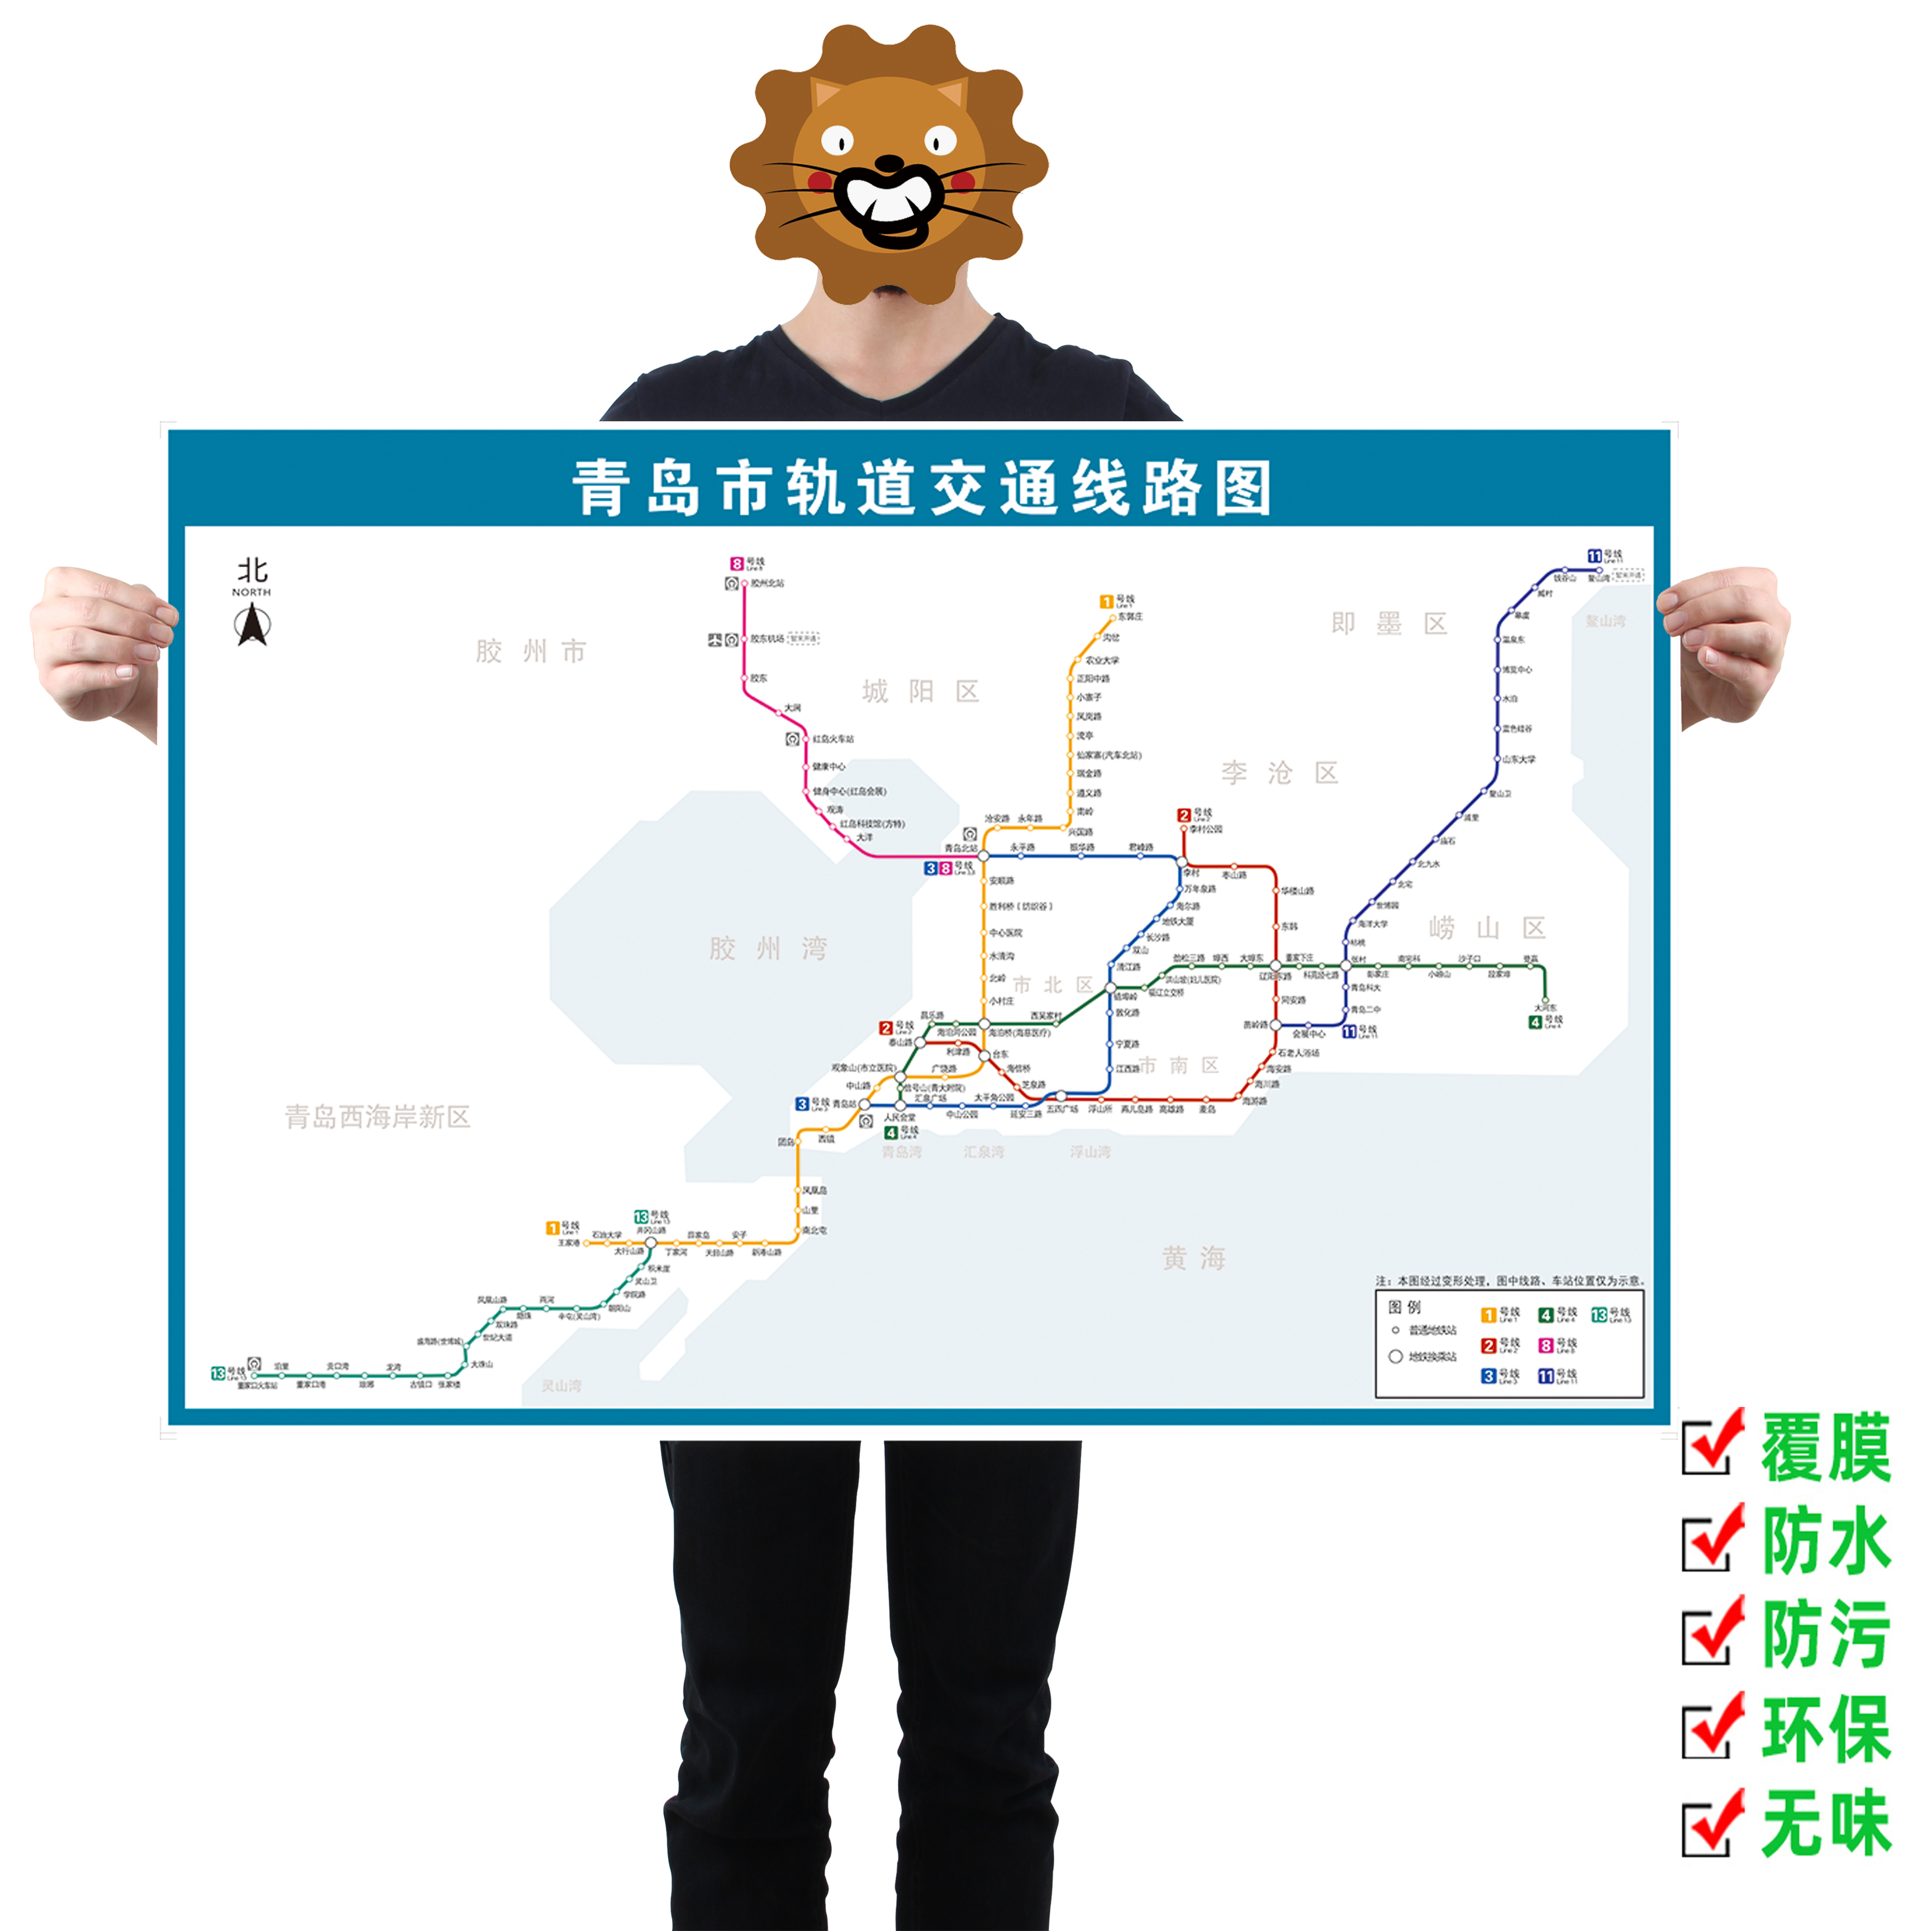 上海地铁线路图规划